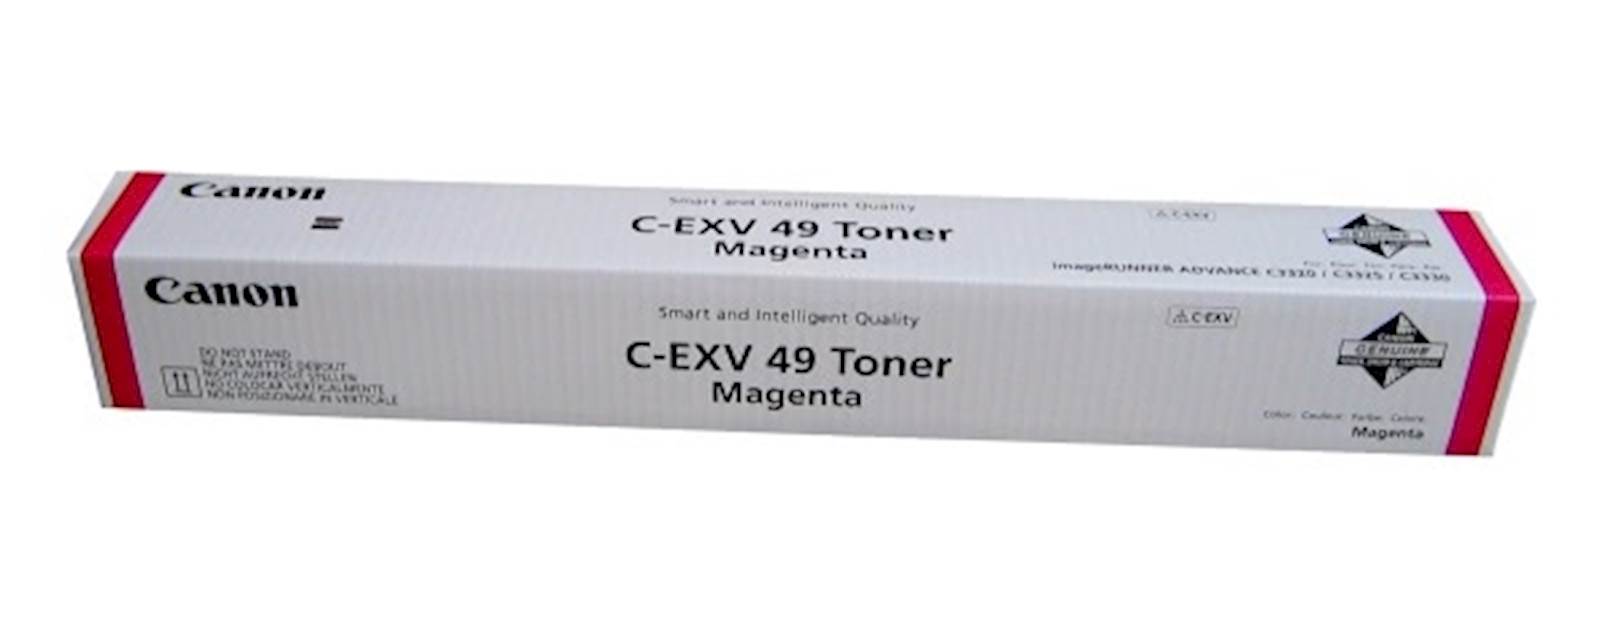 Toner CANON C-EXV 49 Magenta CEXV49M